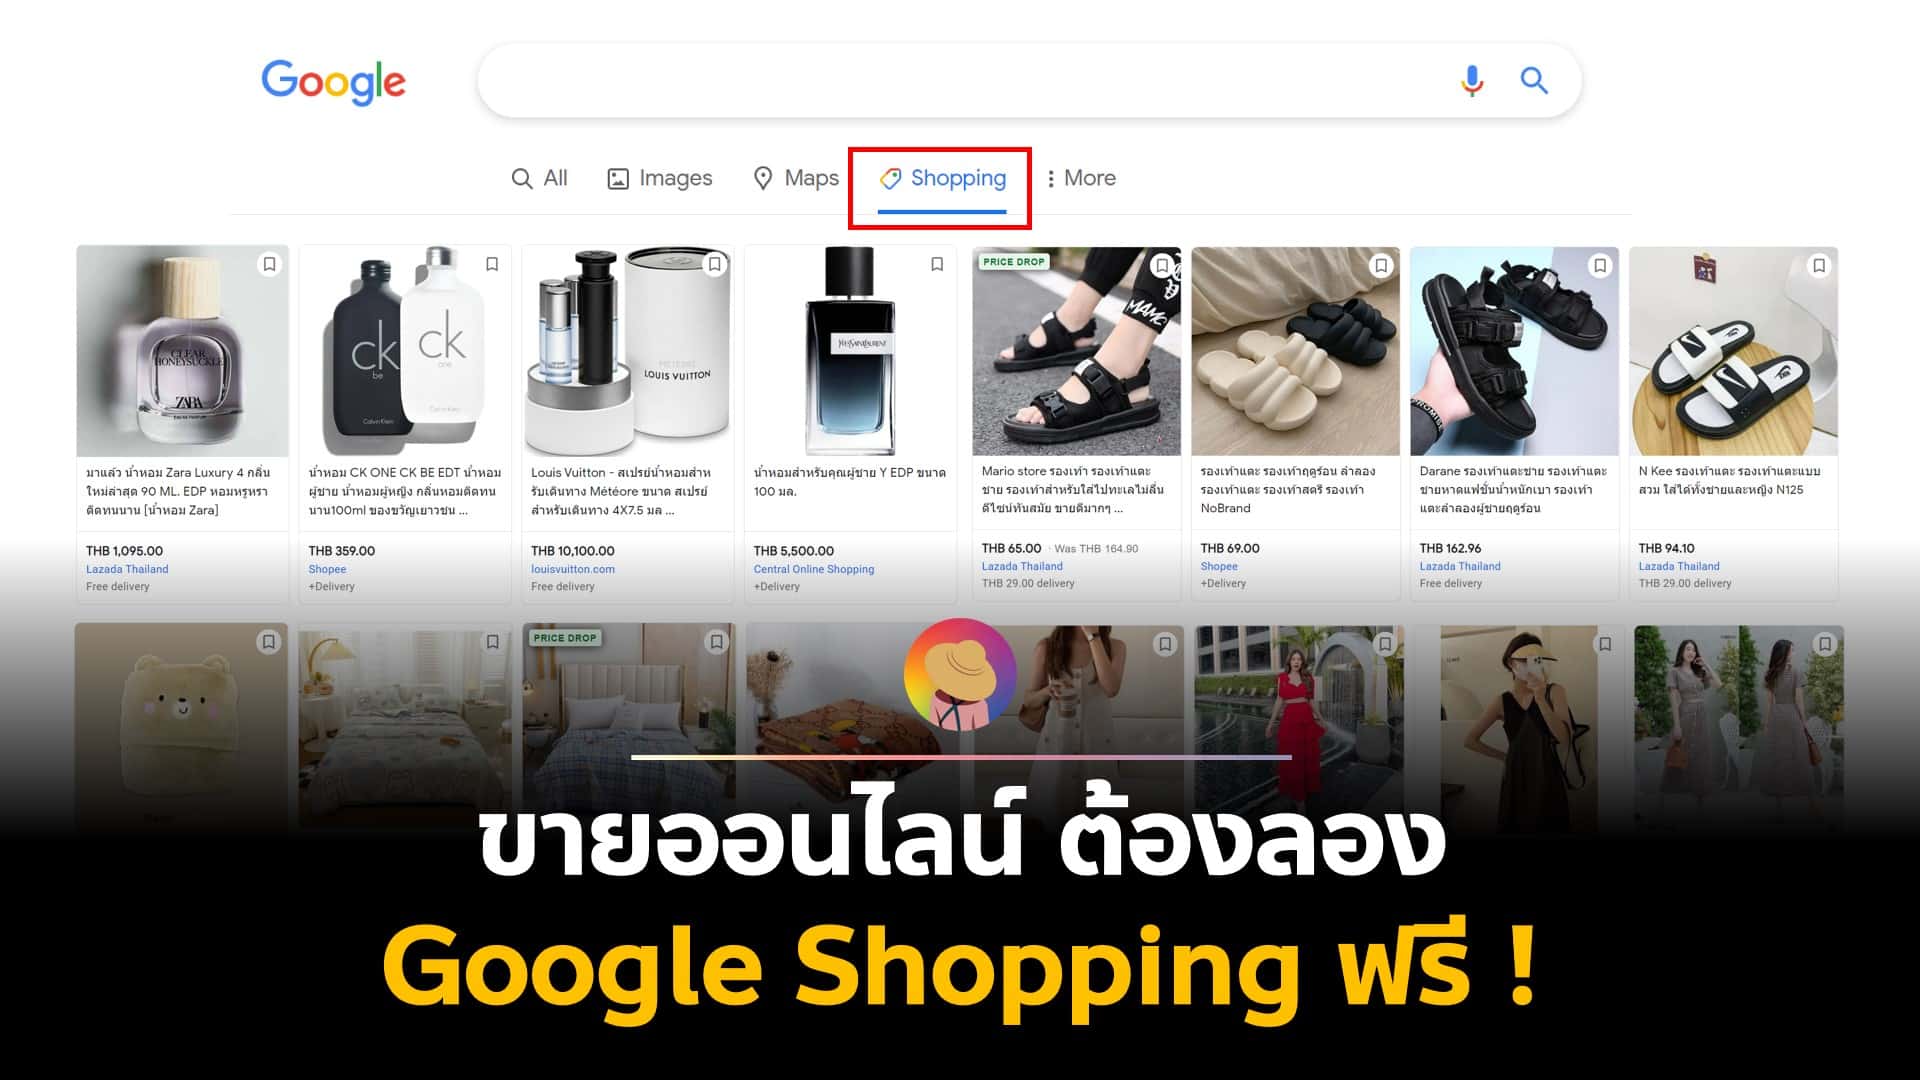 ขายออนไลน์ ต้องลอง Google Shopping ฟรี